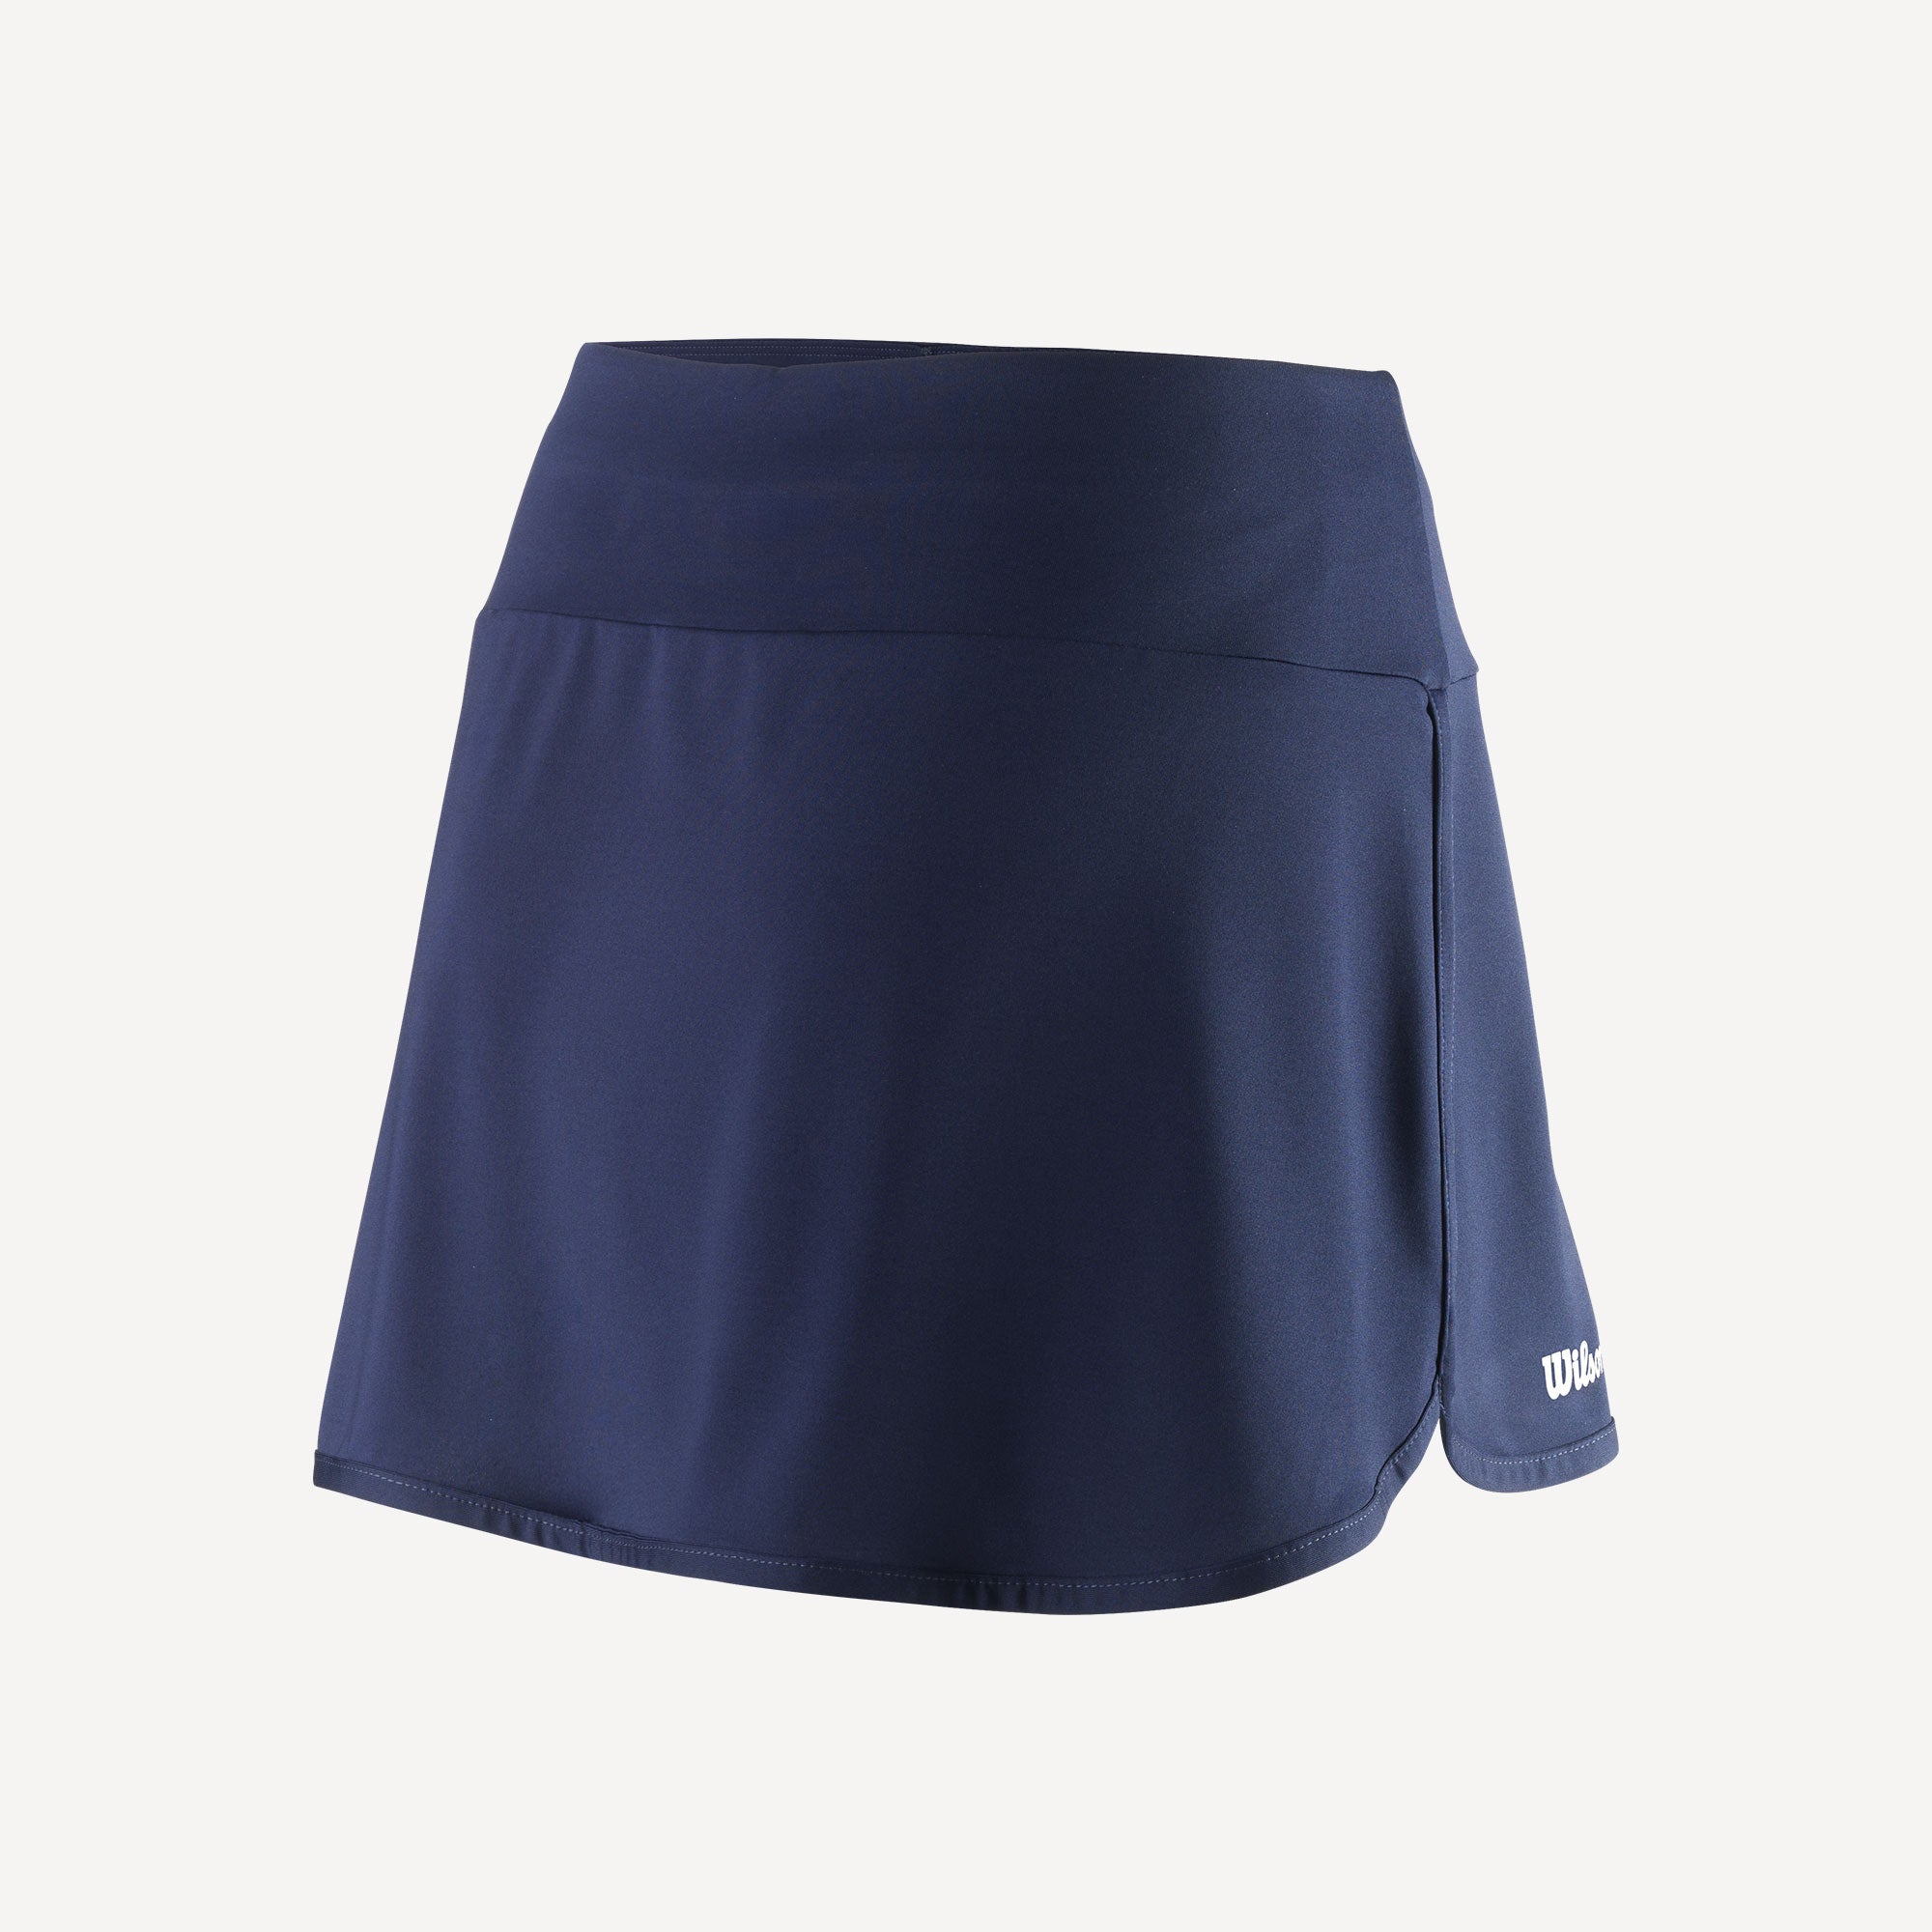 Wilson Team 2 Women's 12.5-Inch Tennis Skirt Blue (2)